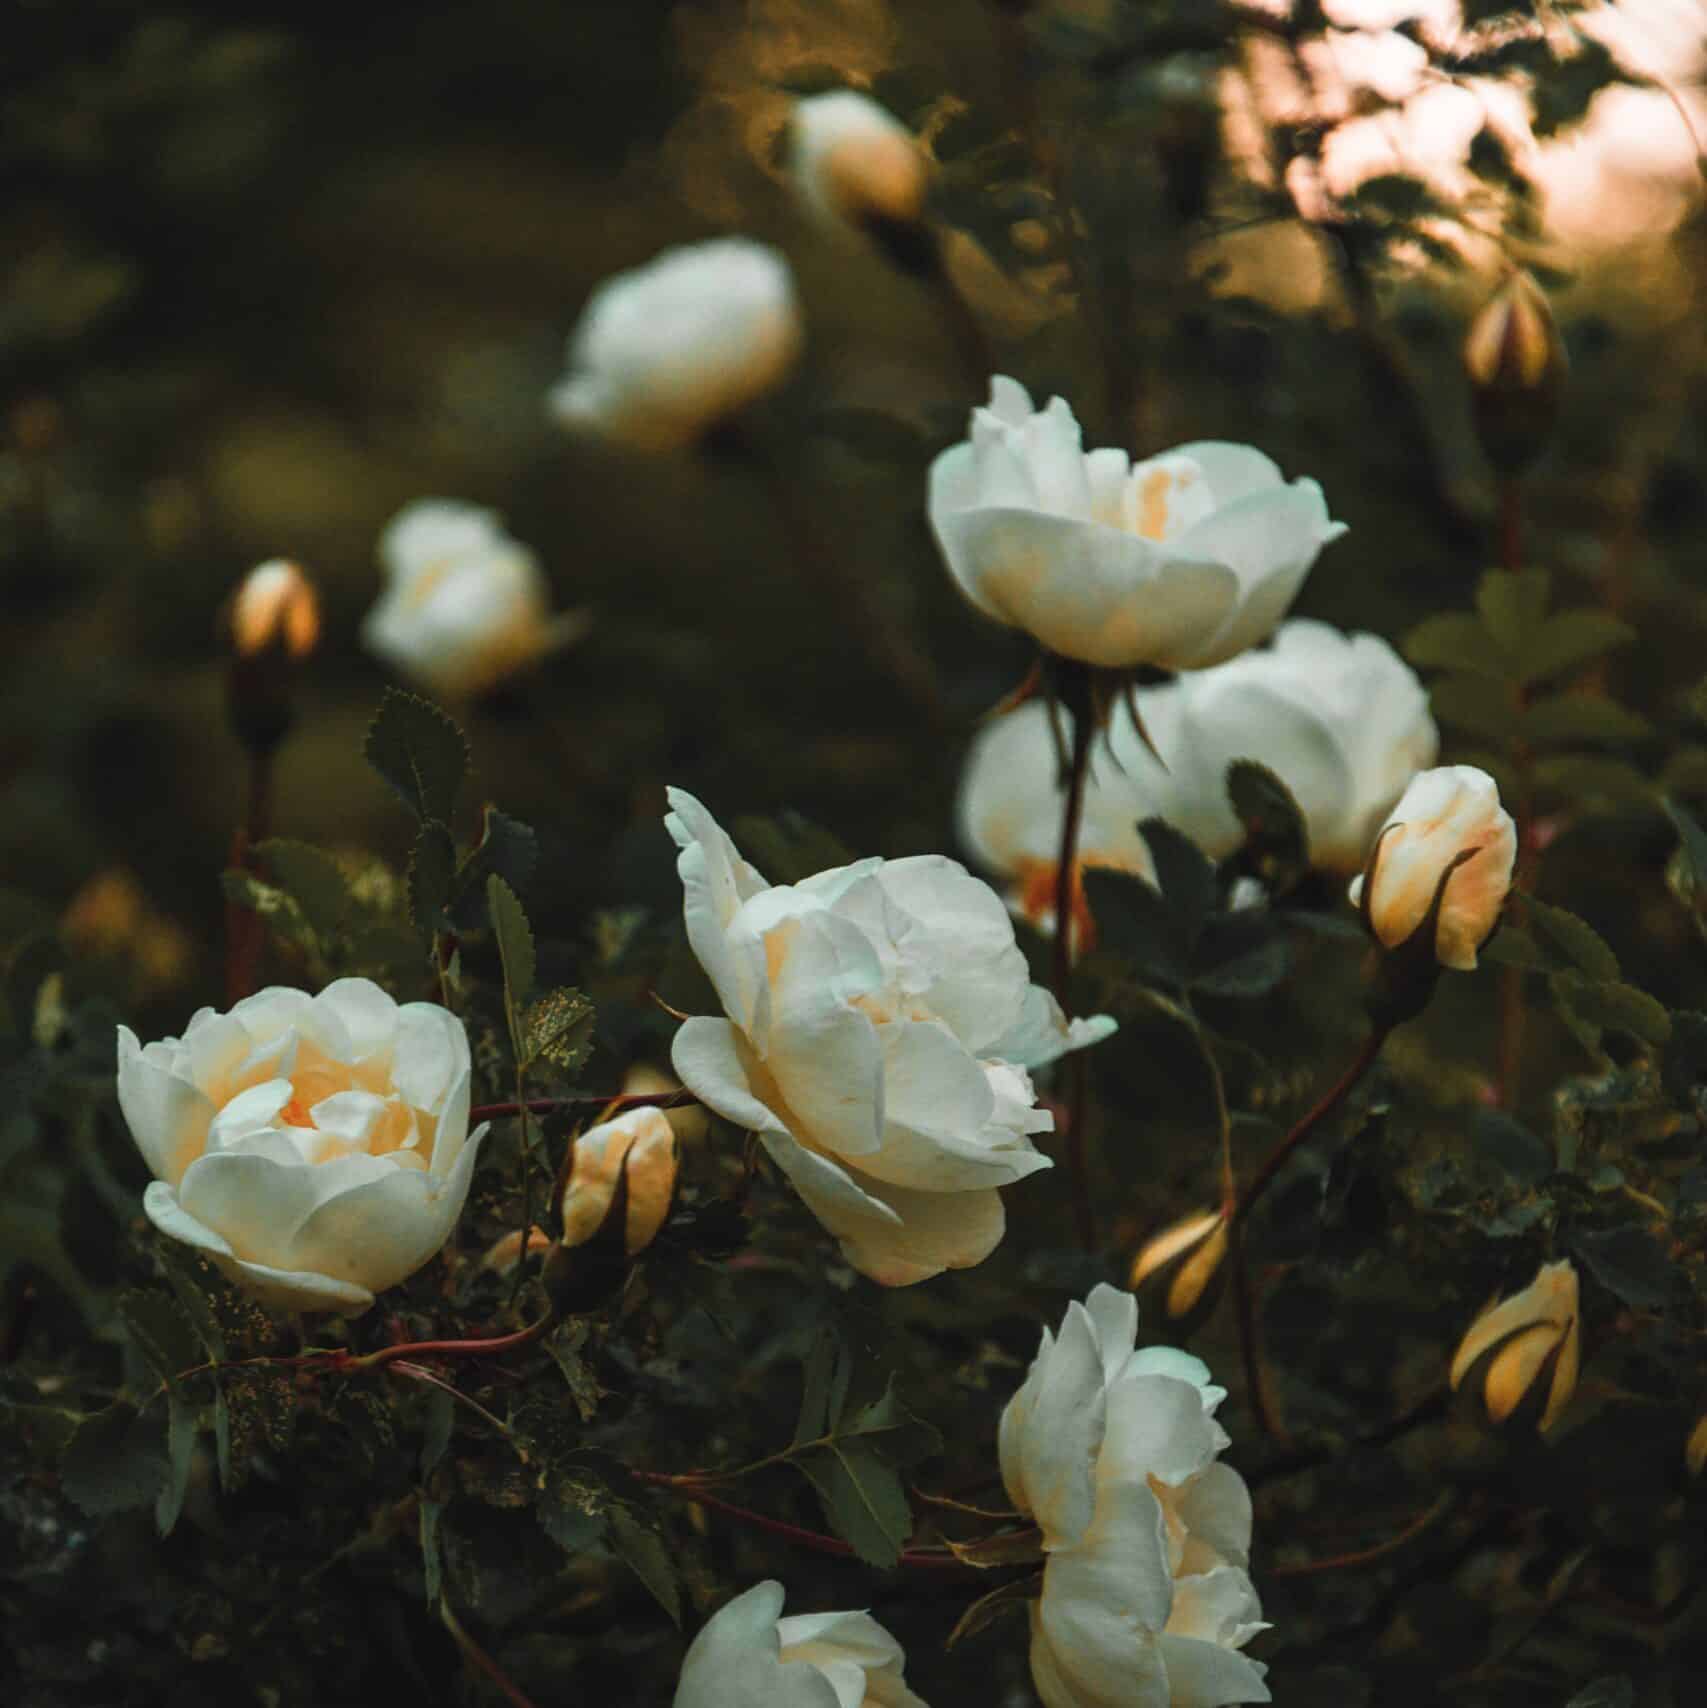 Irina Iriser - Roses blanches